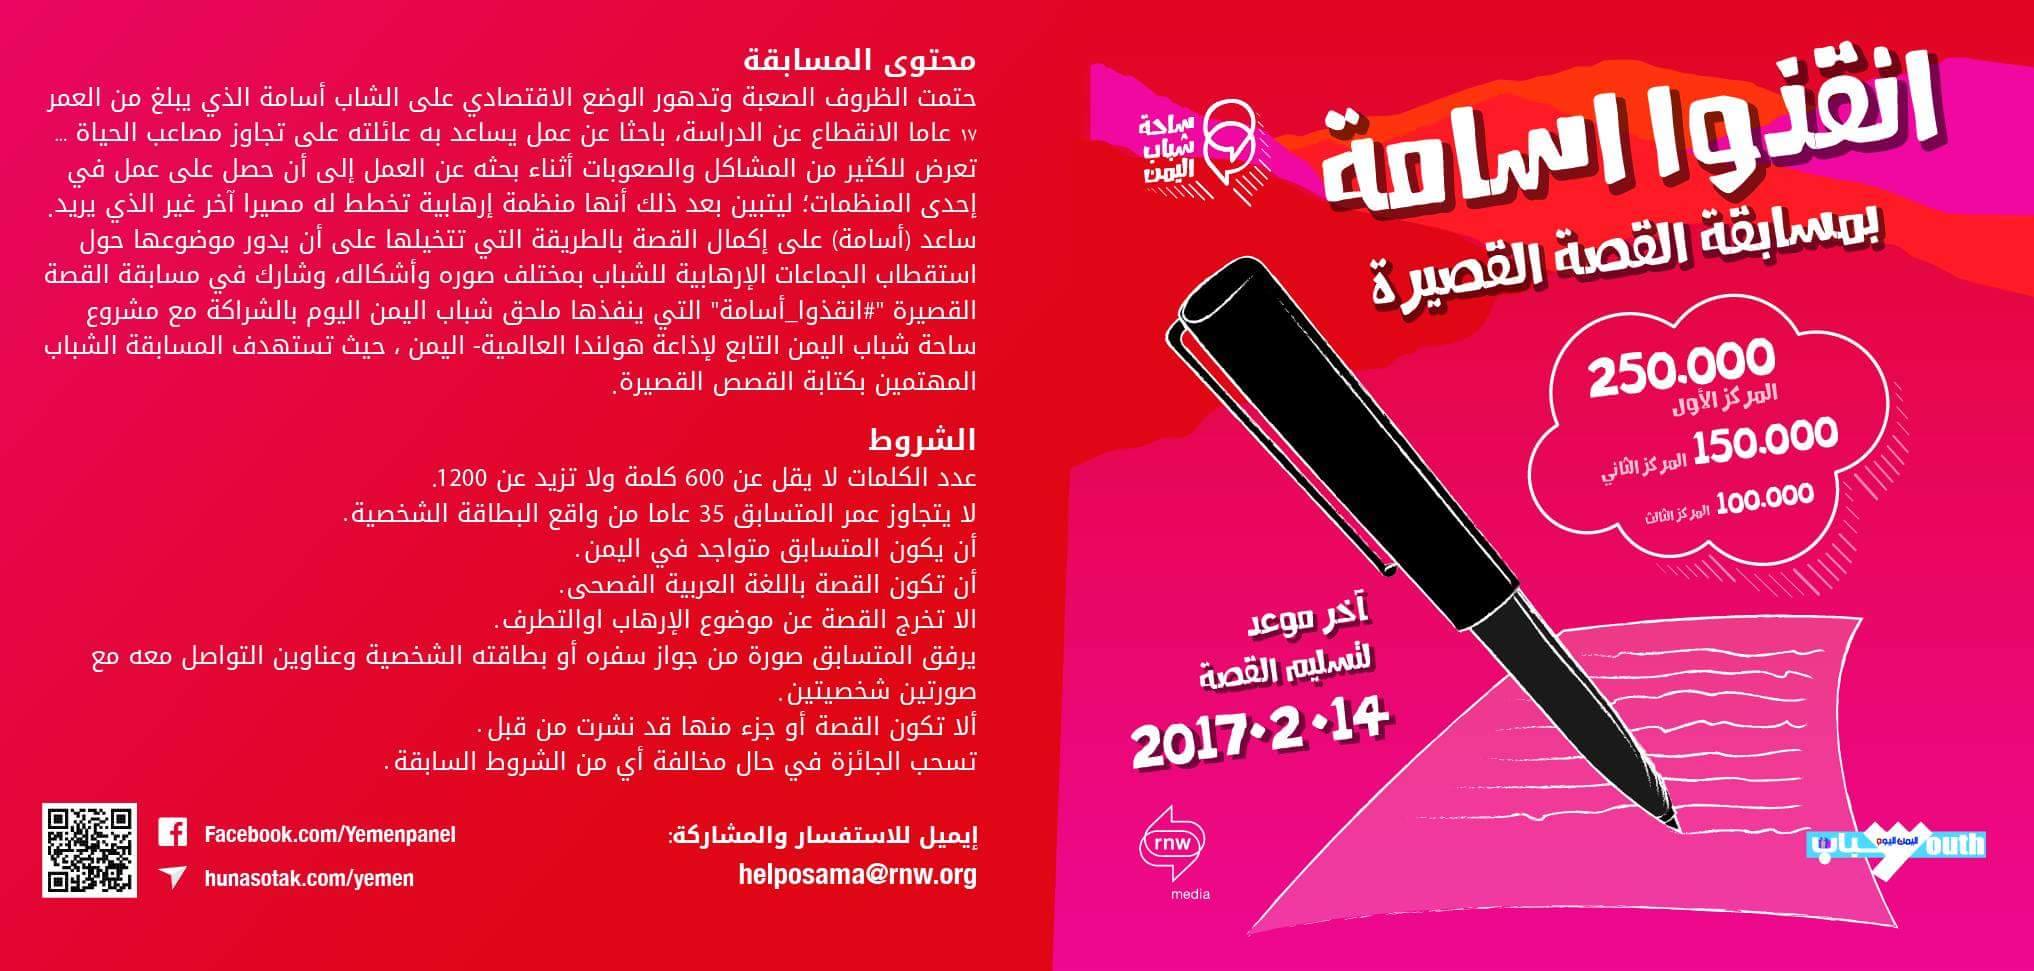 ملحق شباب اليمن اليوم وإذاعة هولندا العالمية تطلقان مسابقة القصة القصيرة